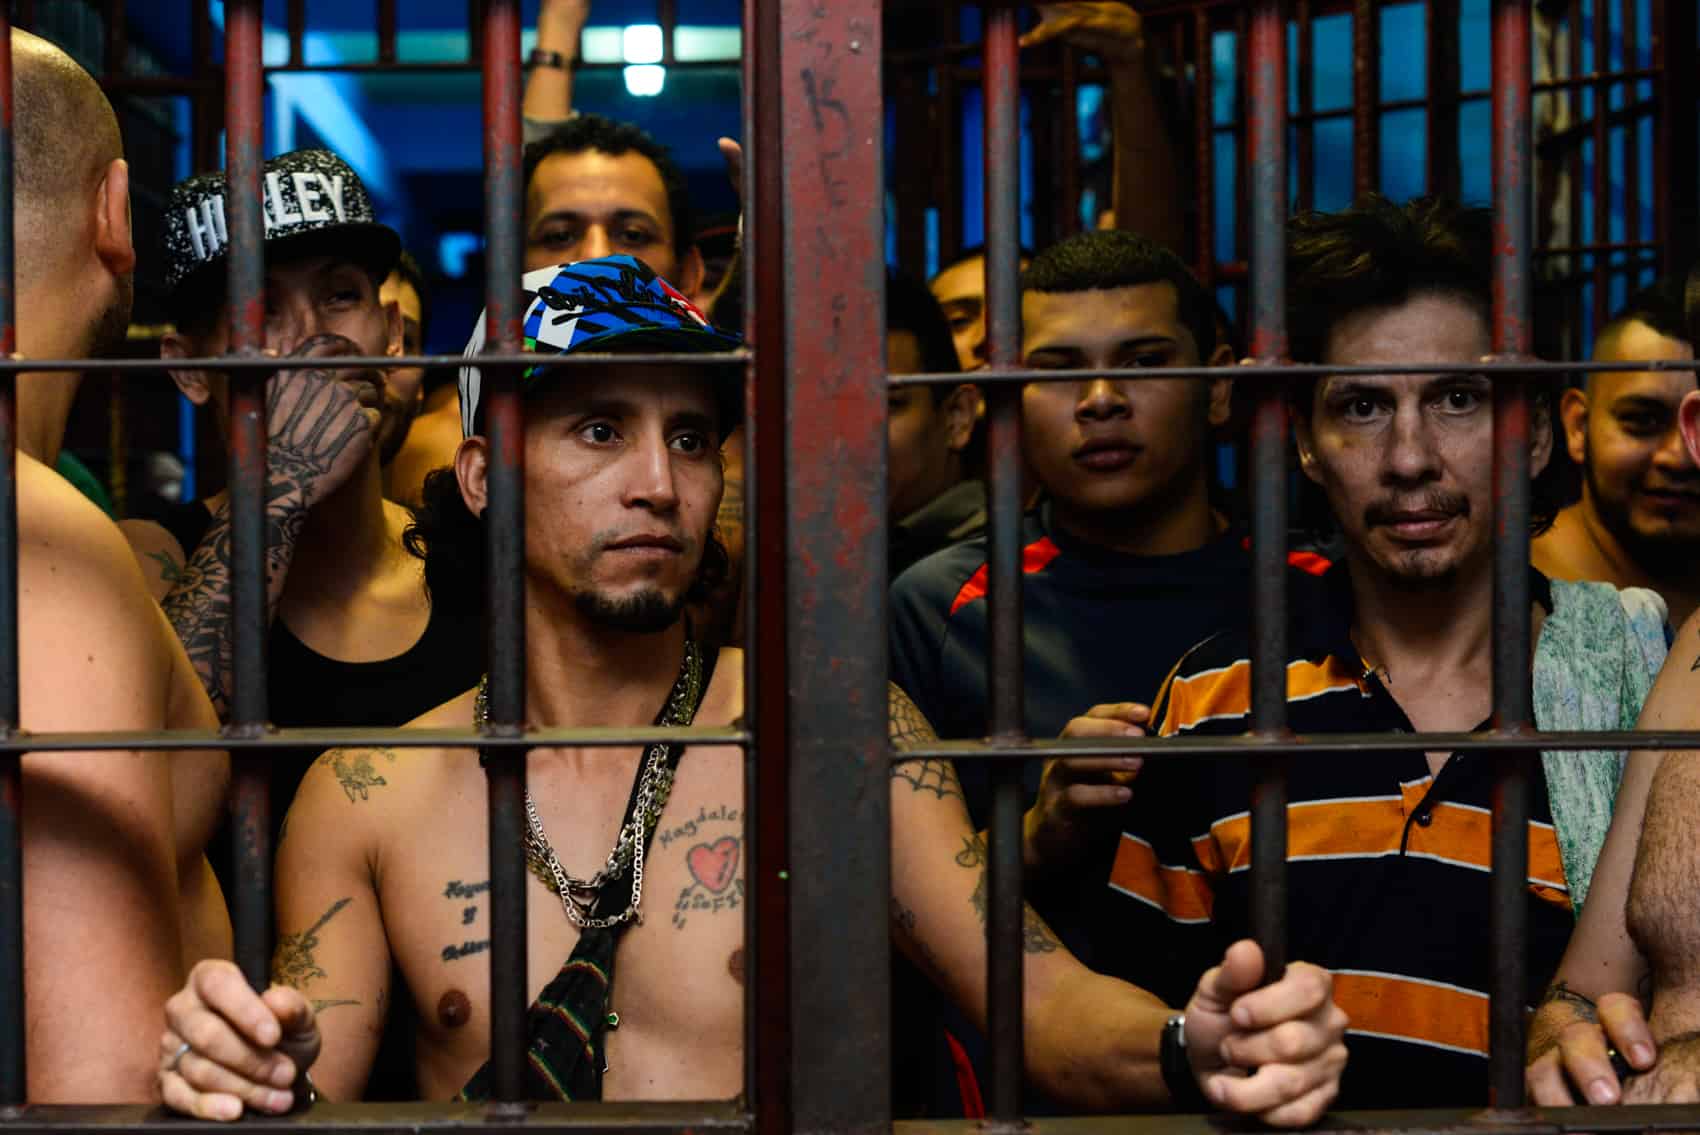 Costa Rica preventive prison